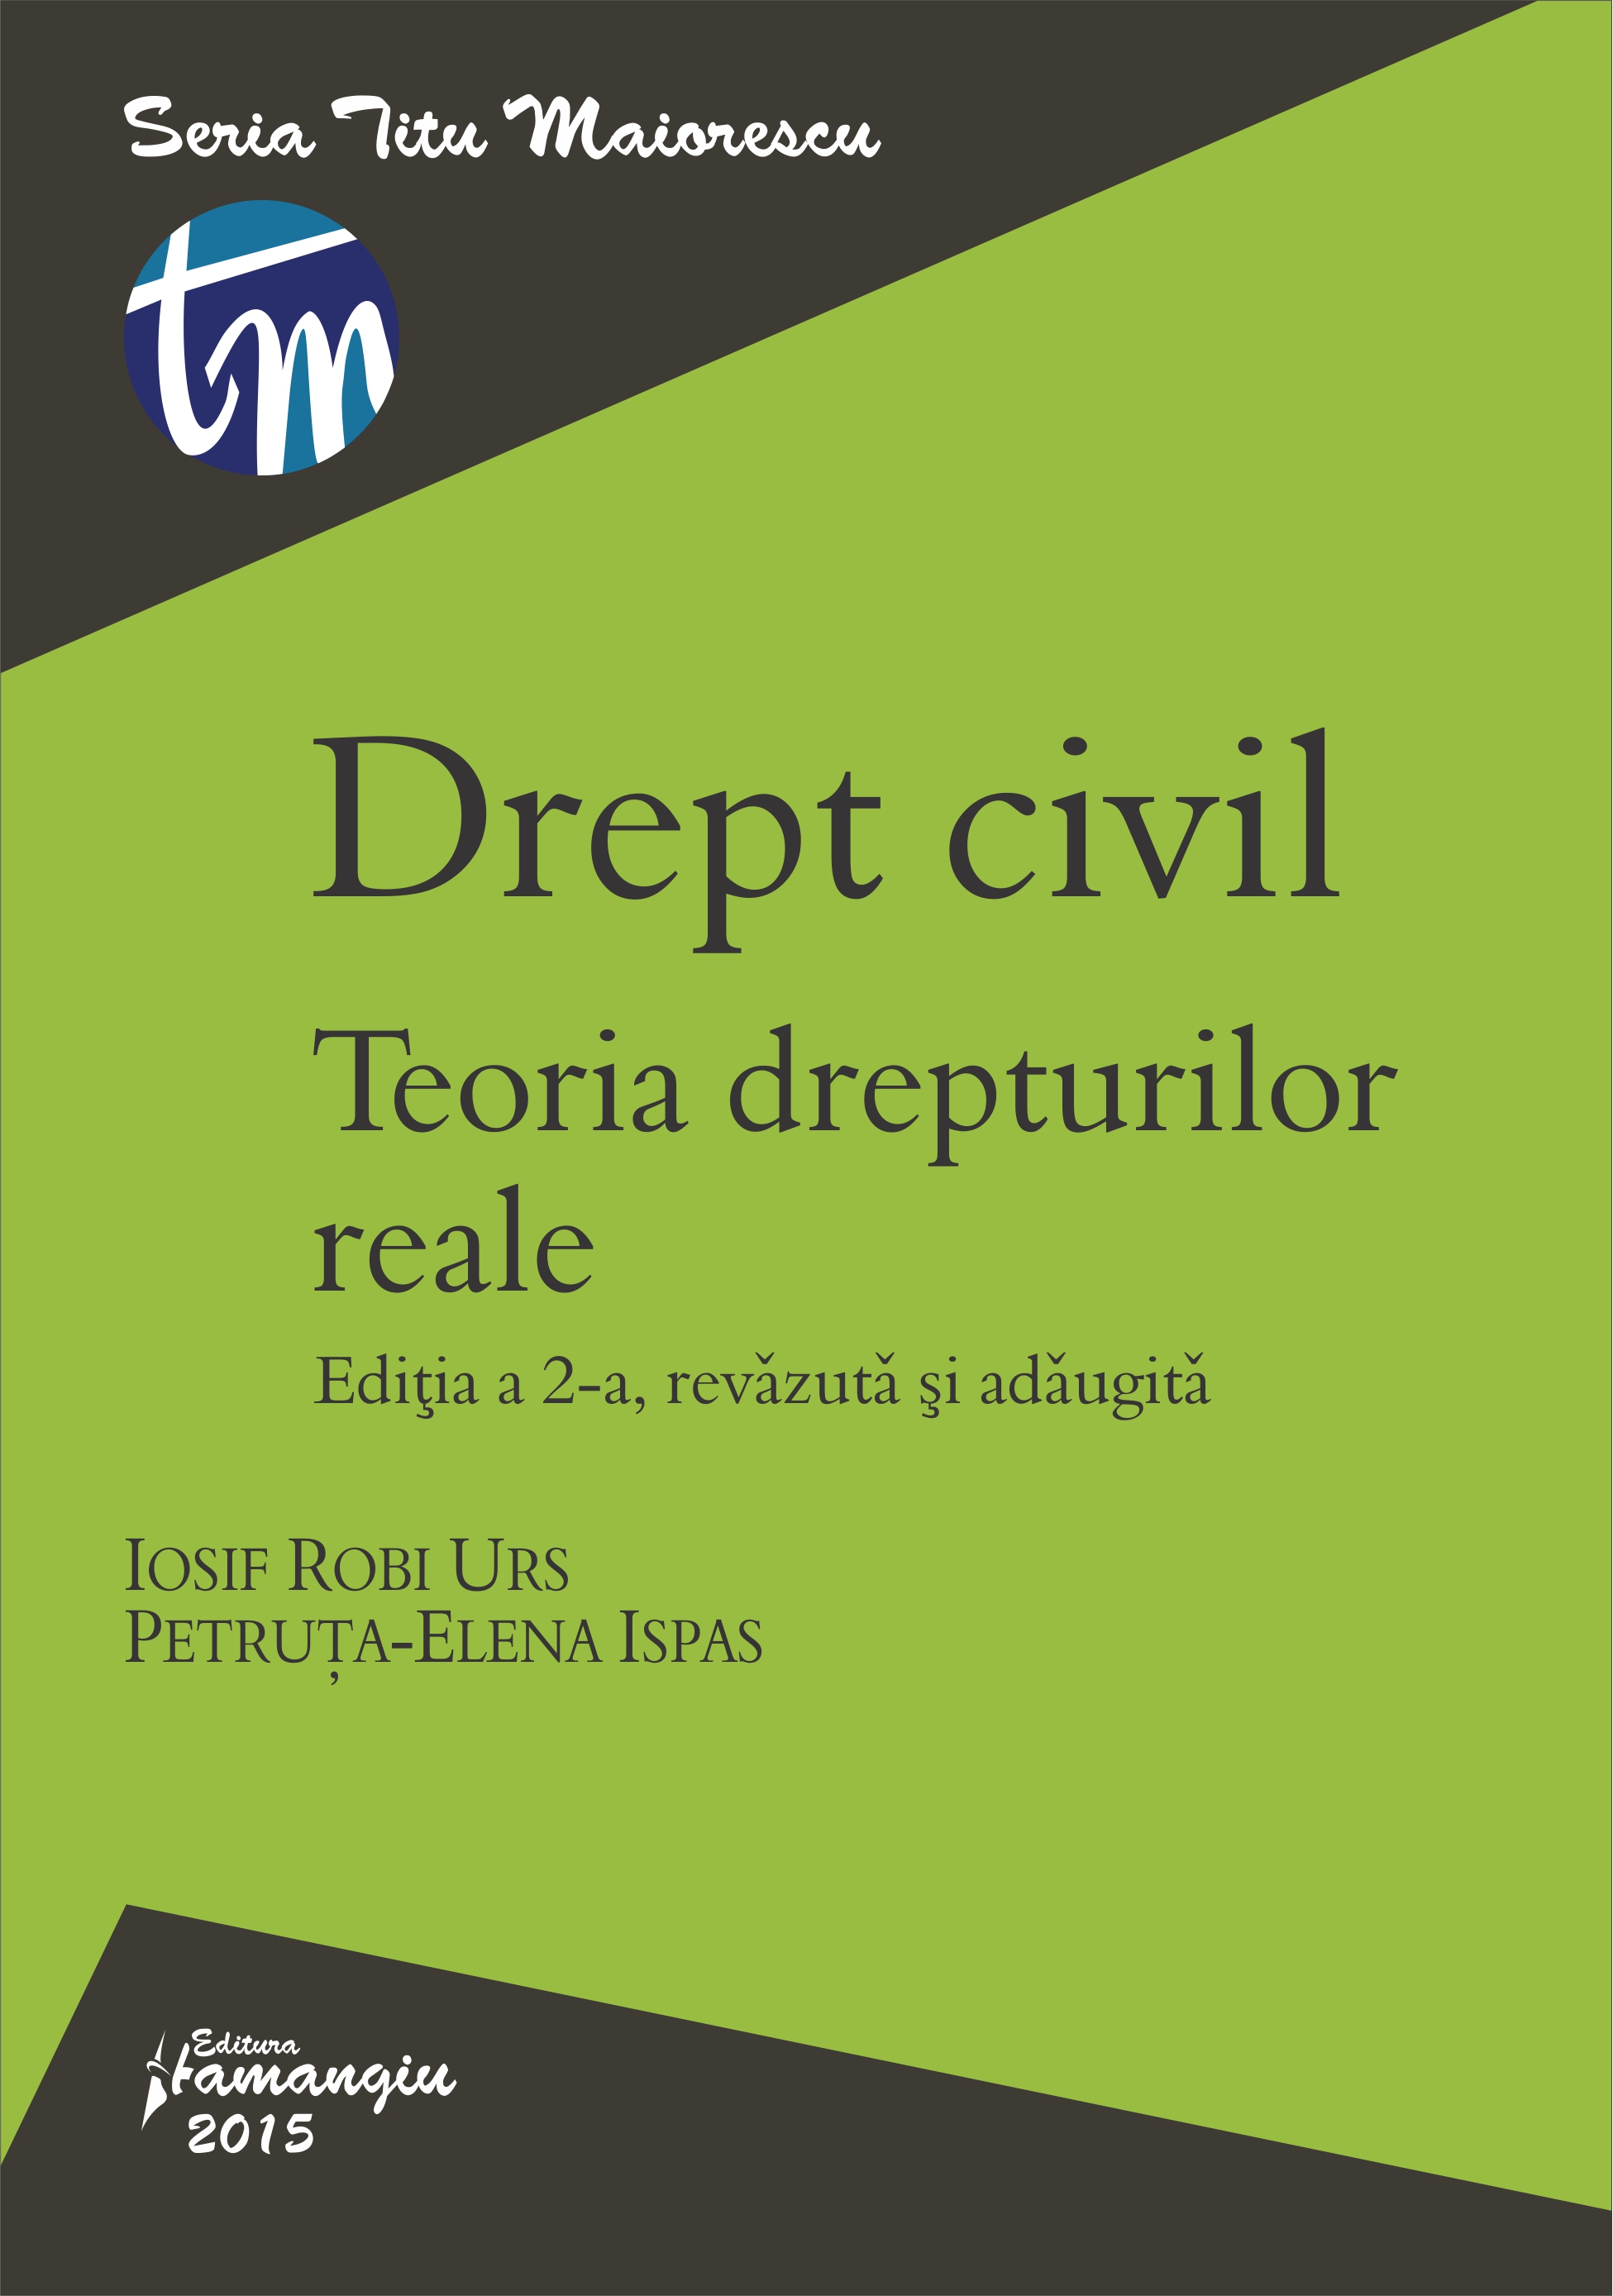 Drept Civil. Teoria Drepturilor Reale Ed.2 - Iosif Robi Urs, PetrutA-Elena Ispas